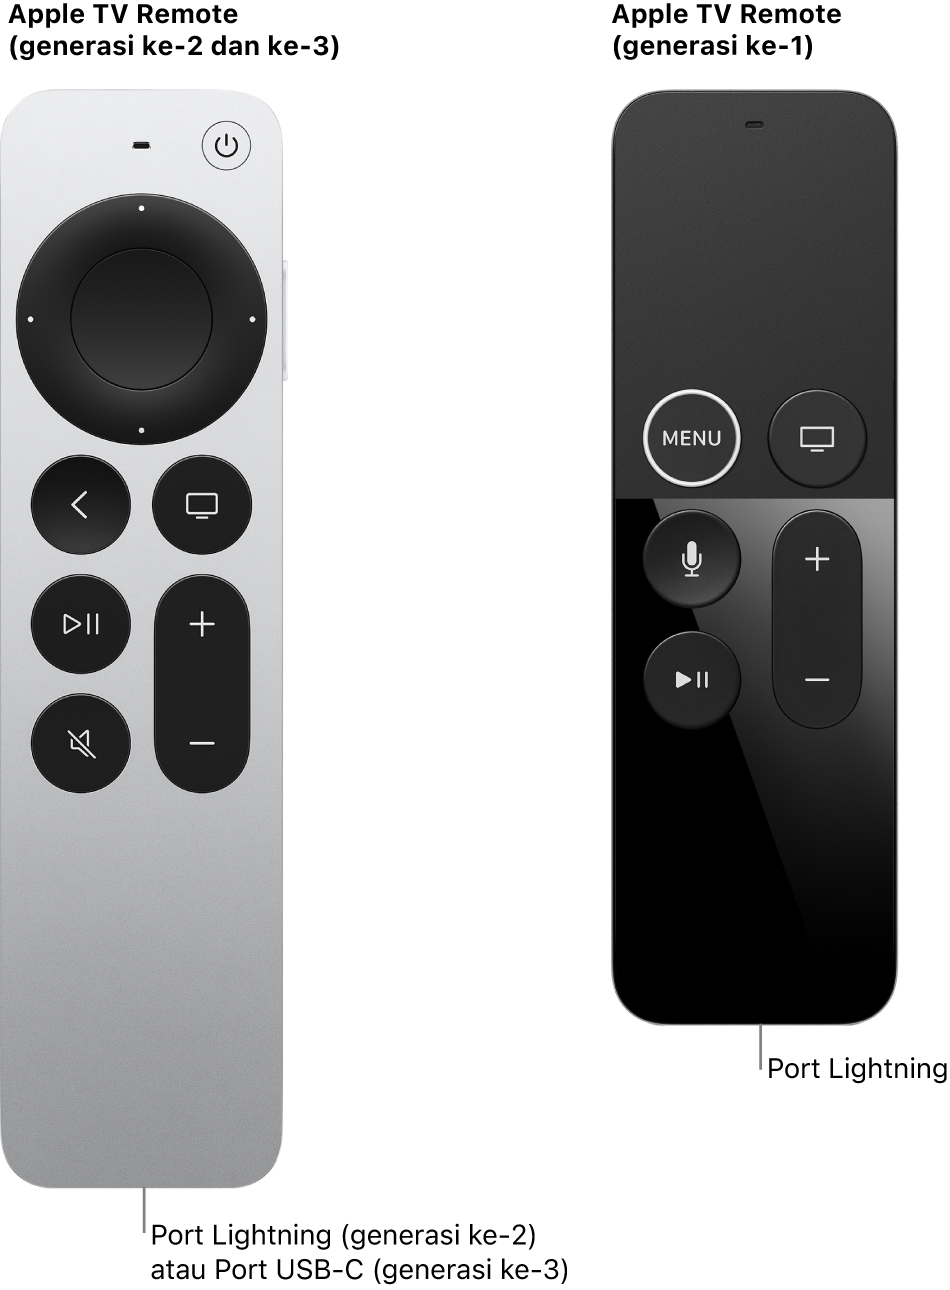 Gambar Apple TV Remote (generasi ke-2) dan Apple TV Remote (generasi ke-1) yang menampilkan port Lightning